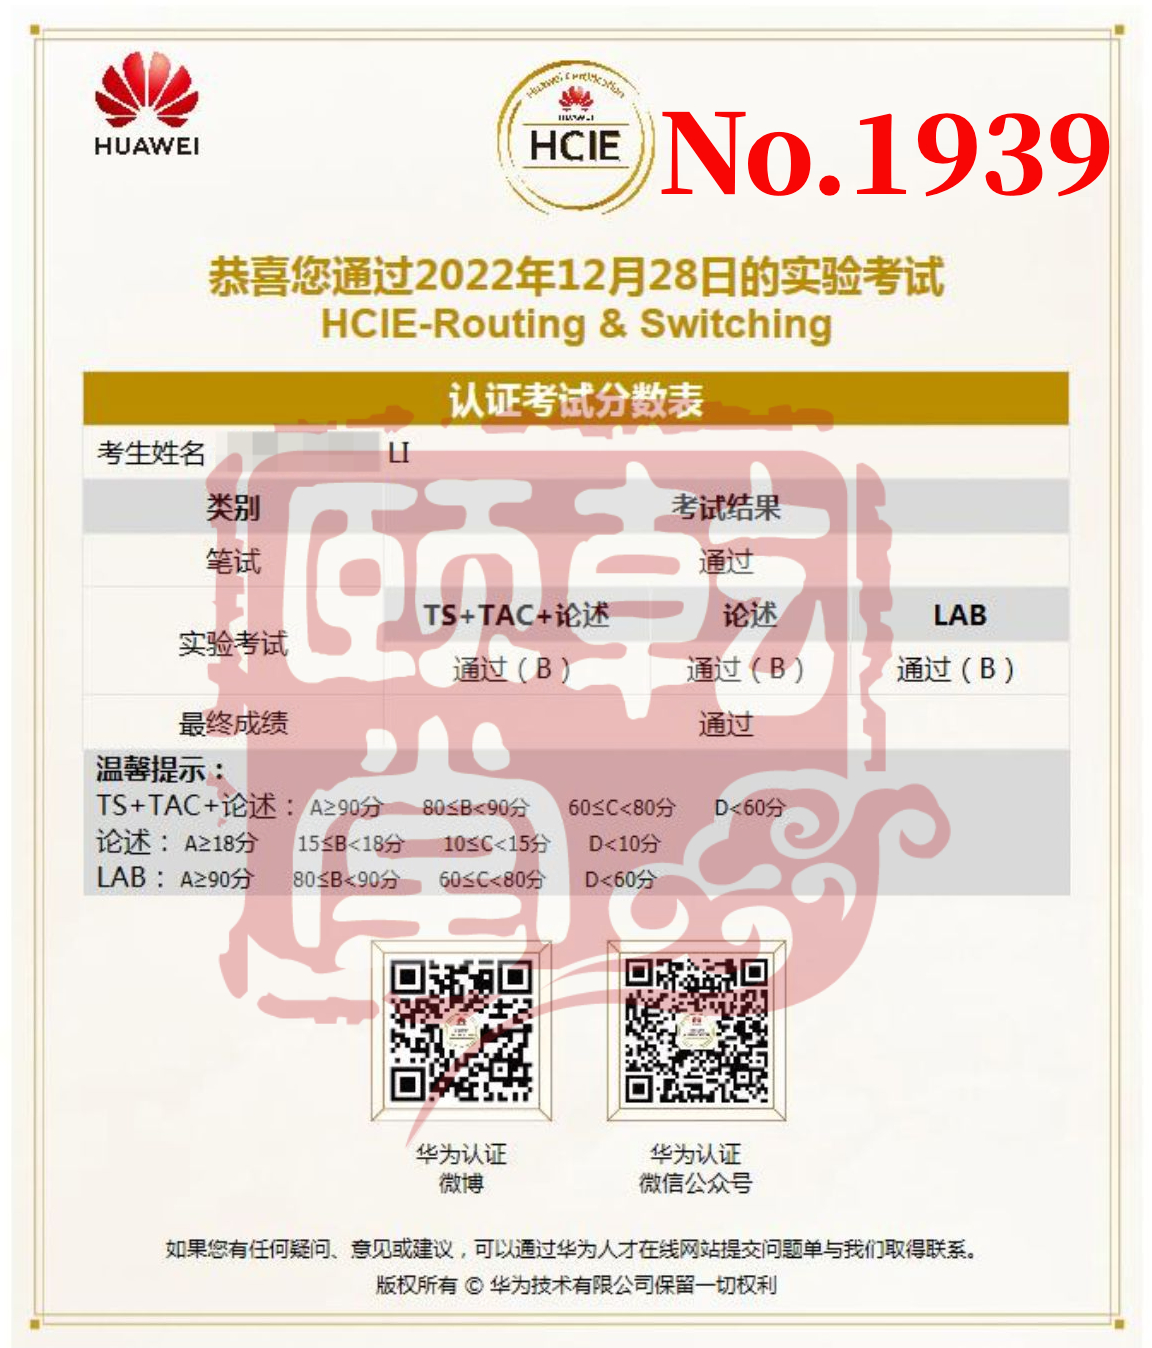 HCIE RS 12.28 李.jpg